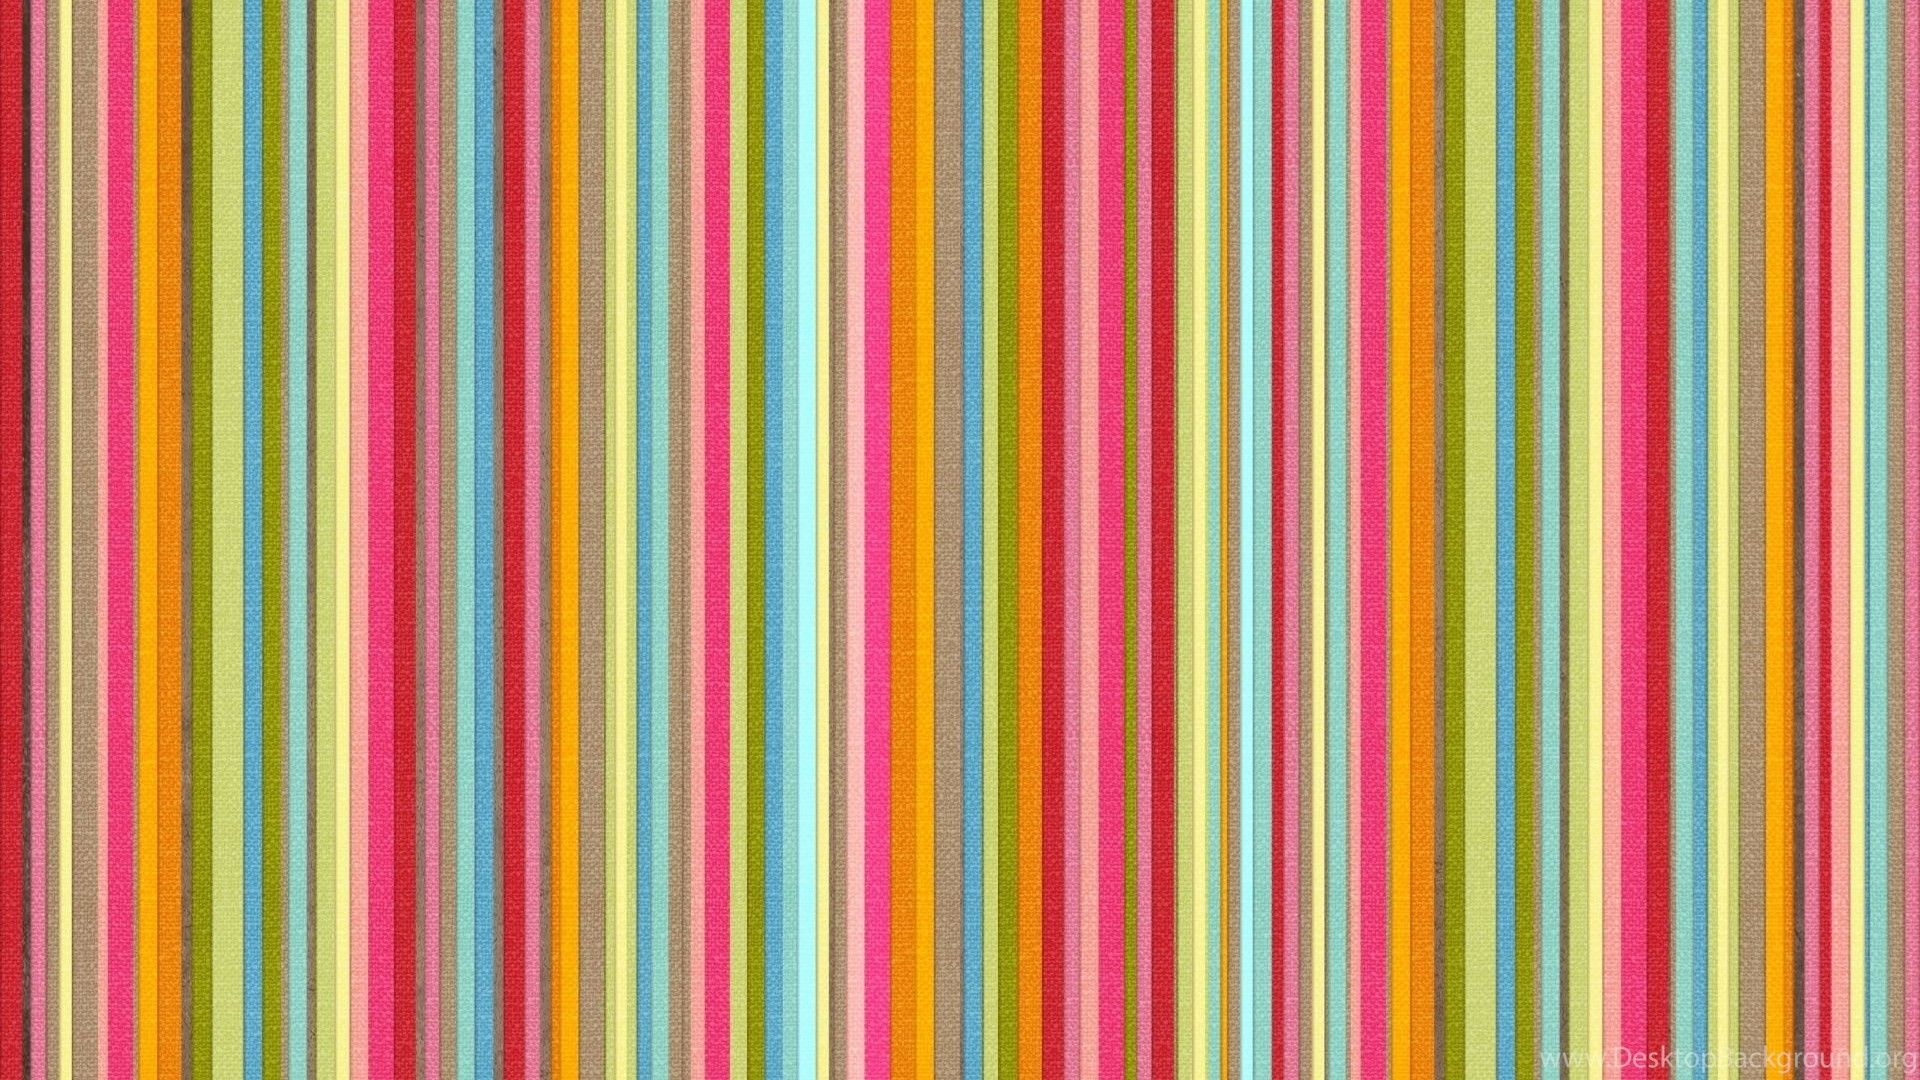 Preppy Stripe Wallpapers - 4k, HD Preppy Stripe Backgrounds on WallpaperBat